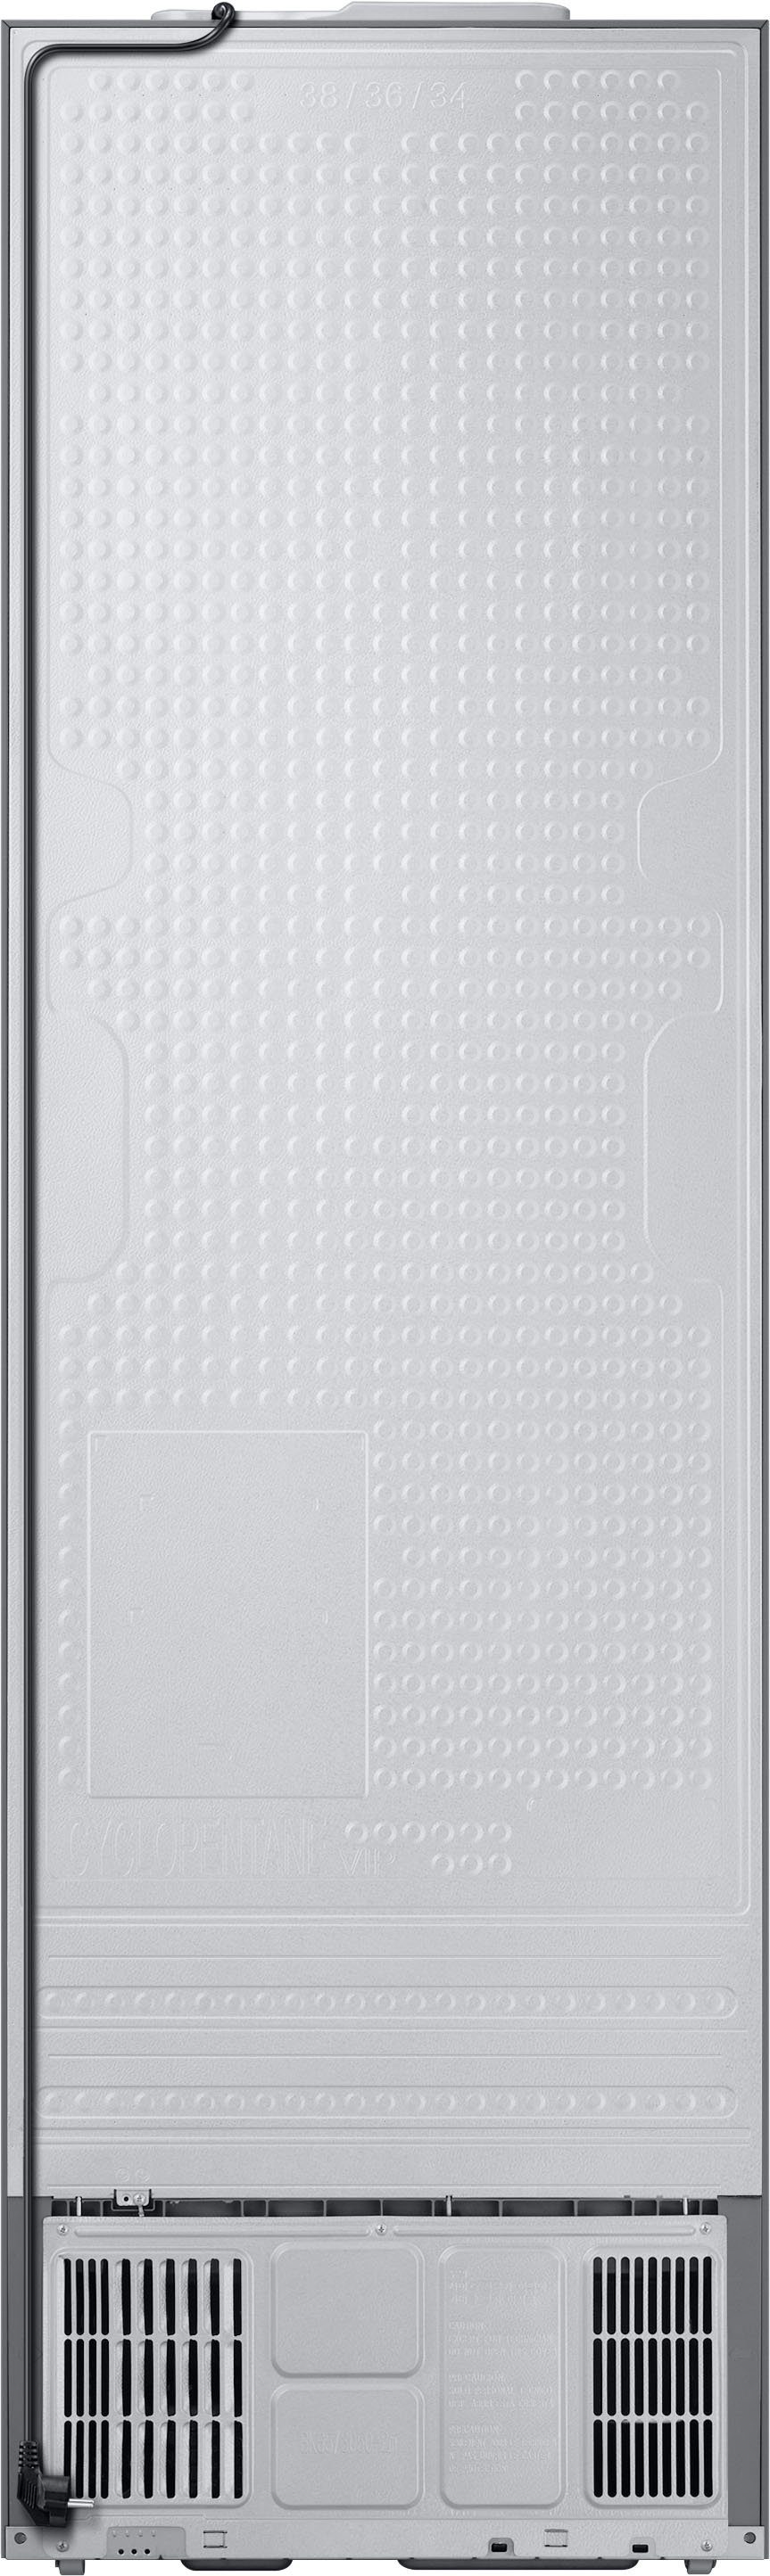 Samsung breit cm 203 RL38A6B6C41, Kühl-/Gefrierkombination 59,5 cm hoch, Bespoke